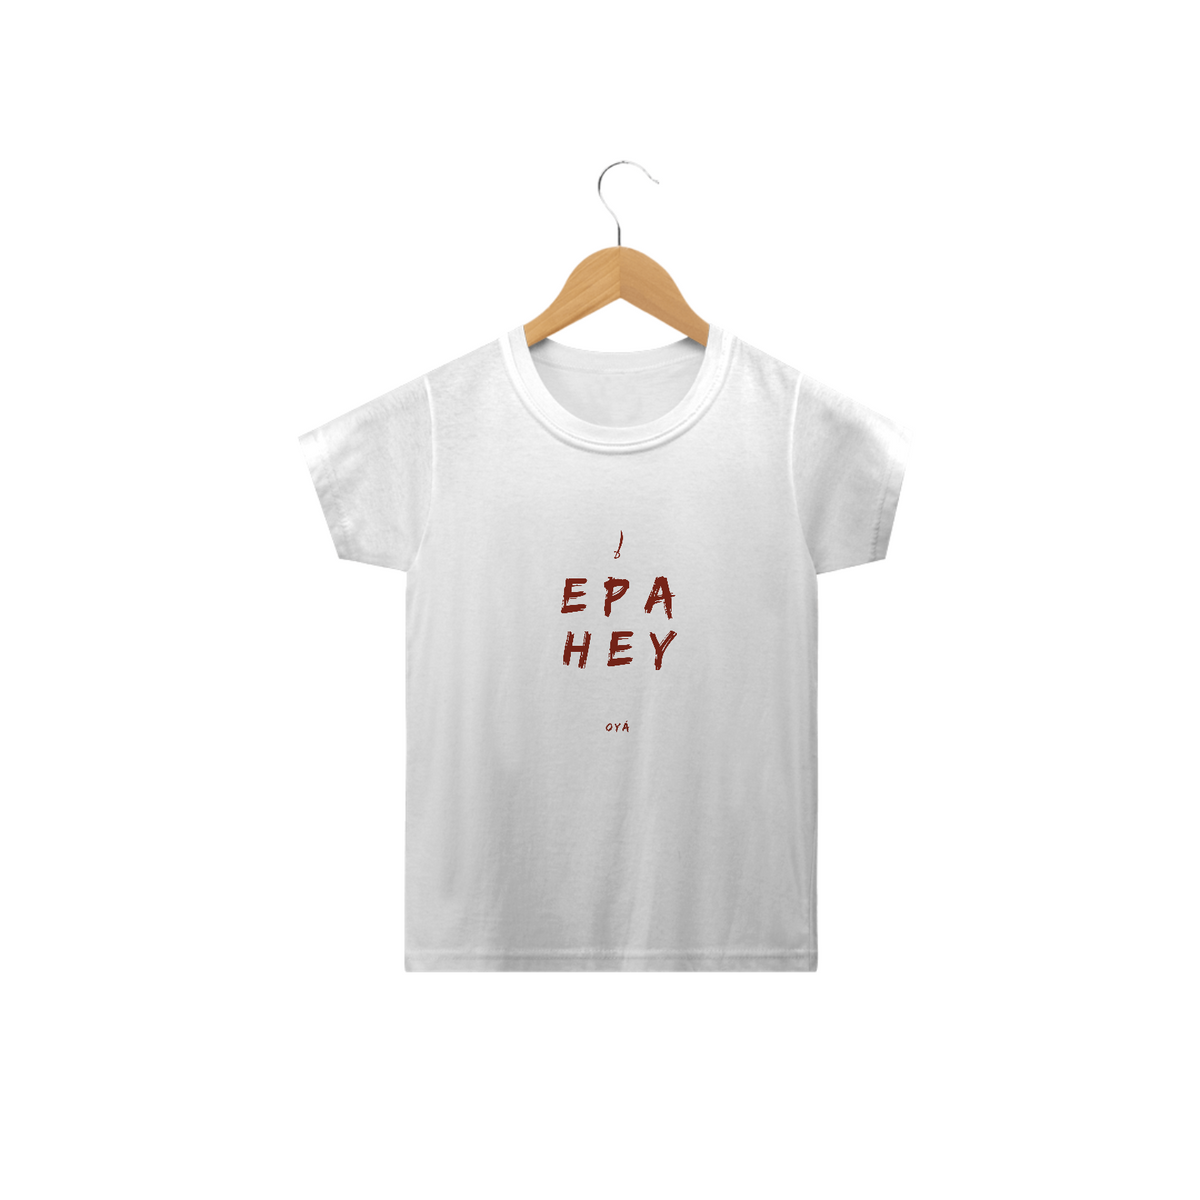 Nome do produto: Camiseta Infantil Oyá Saudação Oyá Epa Hey Oyá 100% Algodão Fio 24.1, 145g costura simples e gola ribana